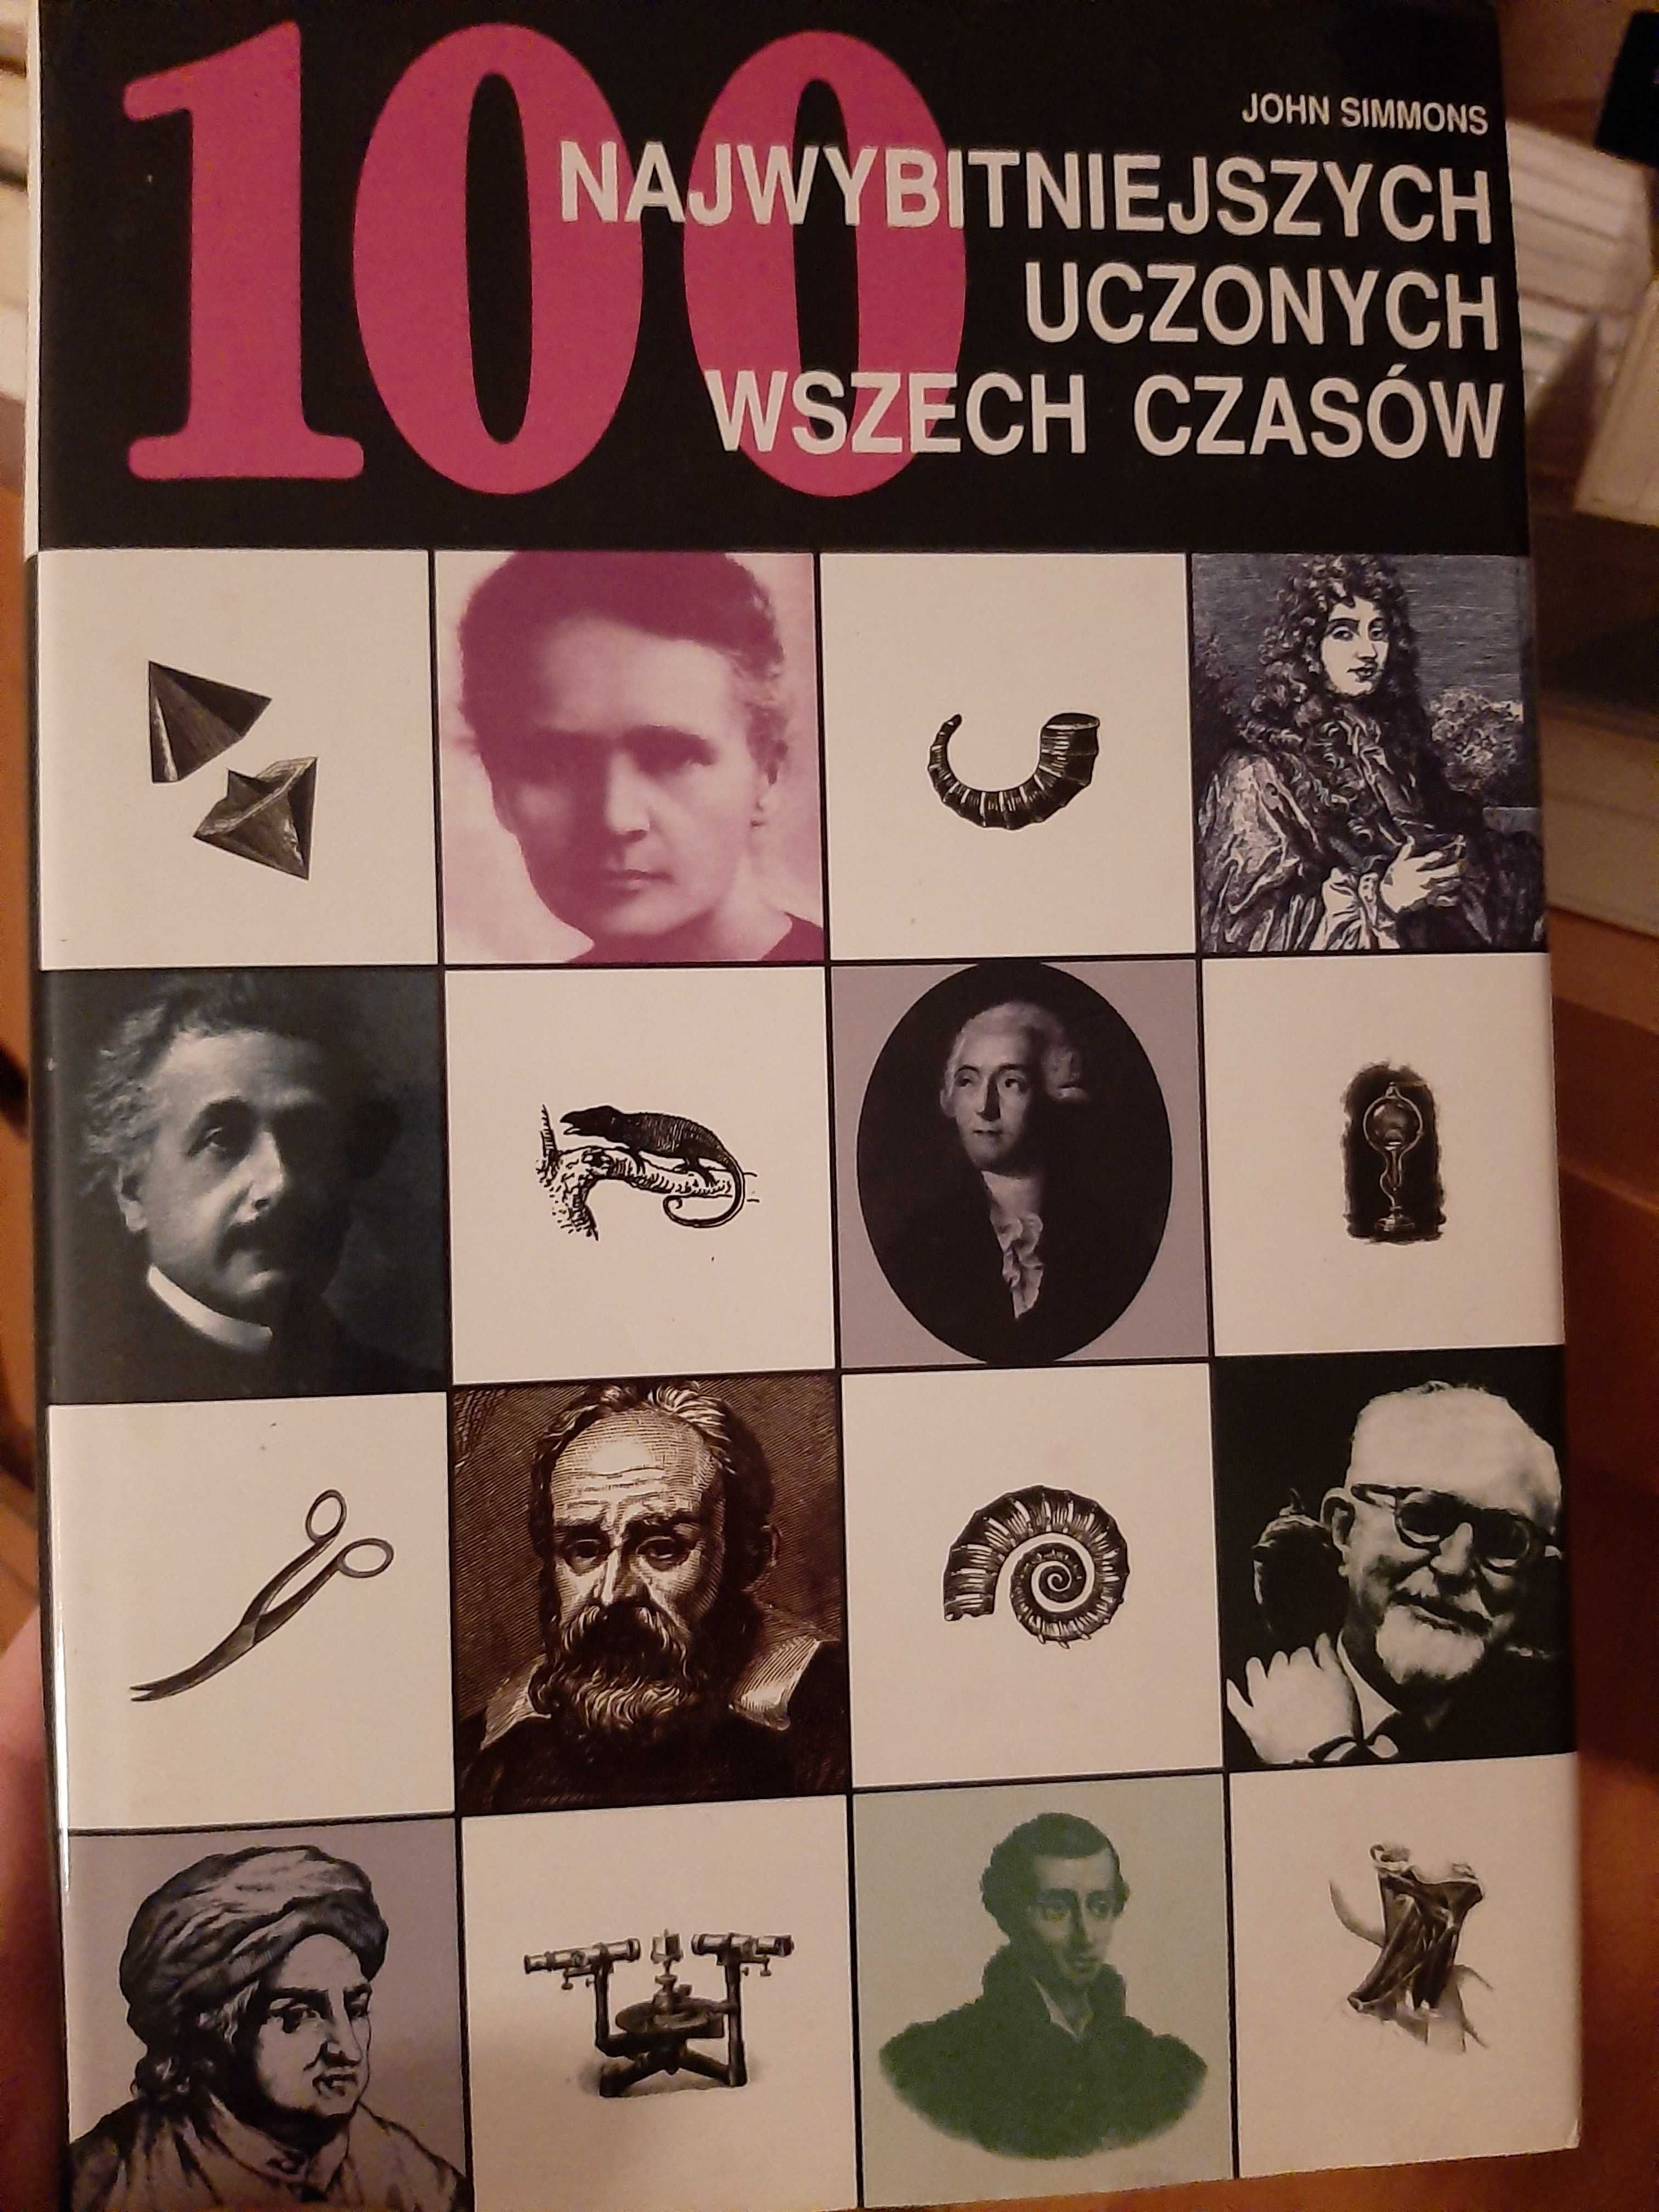 Książka 100 najwybitniejszych uczonych wszech czasów.